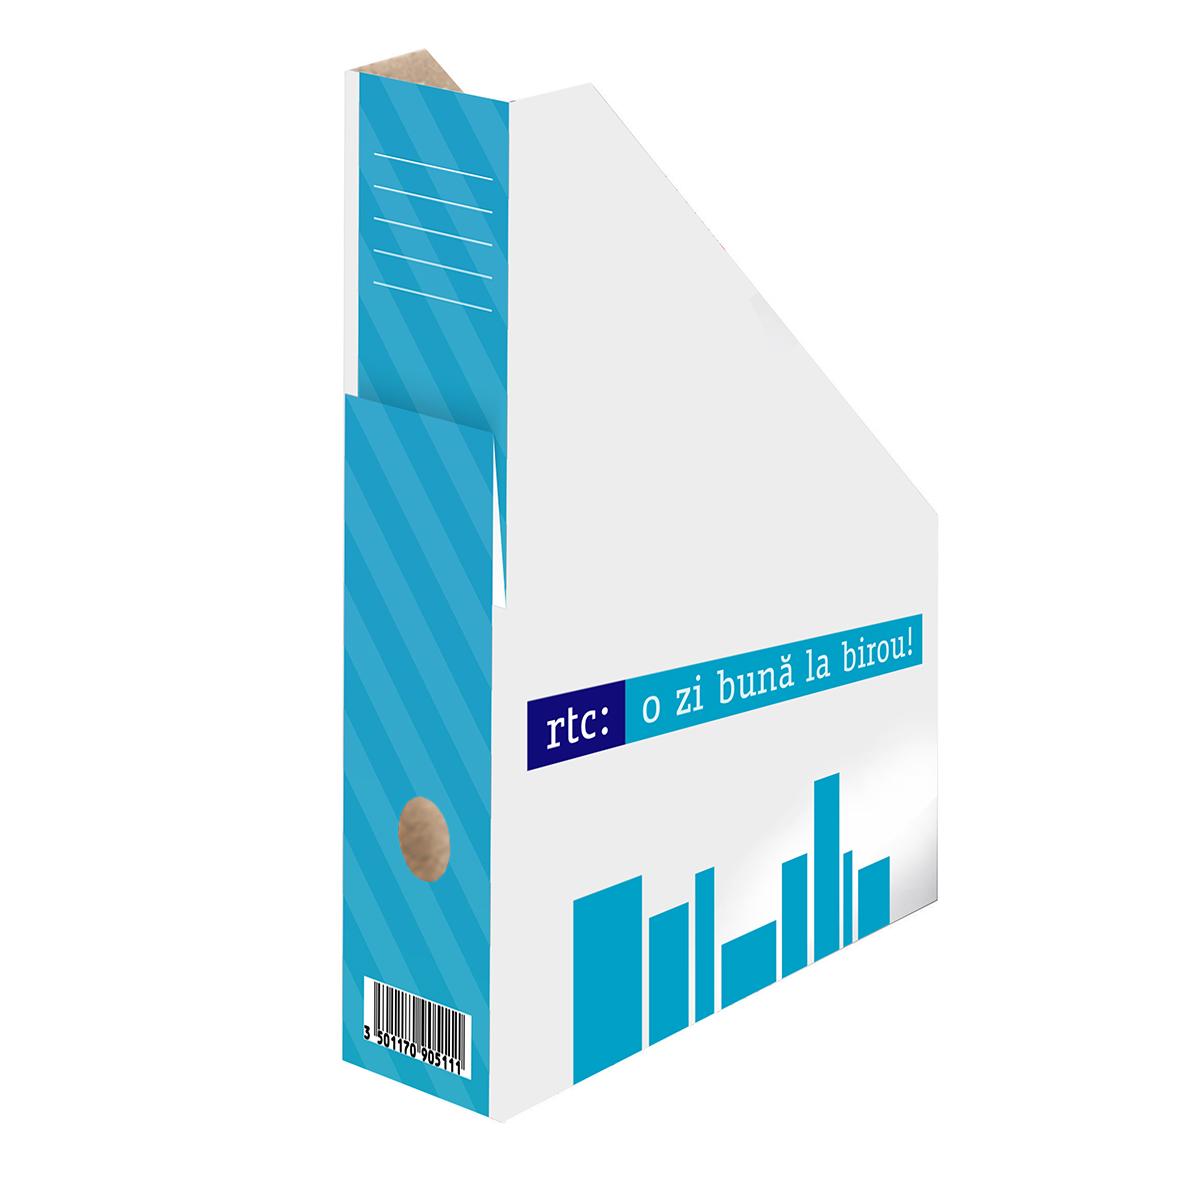 Suport vertical pentru documente RTC, carton FSC, alb, 20 bucati/set